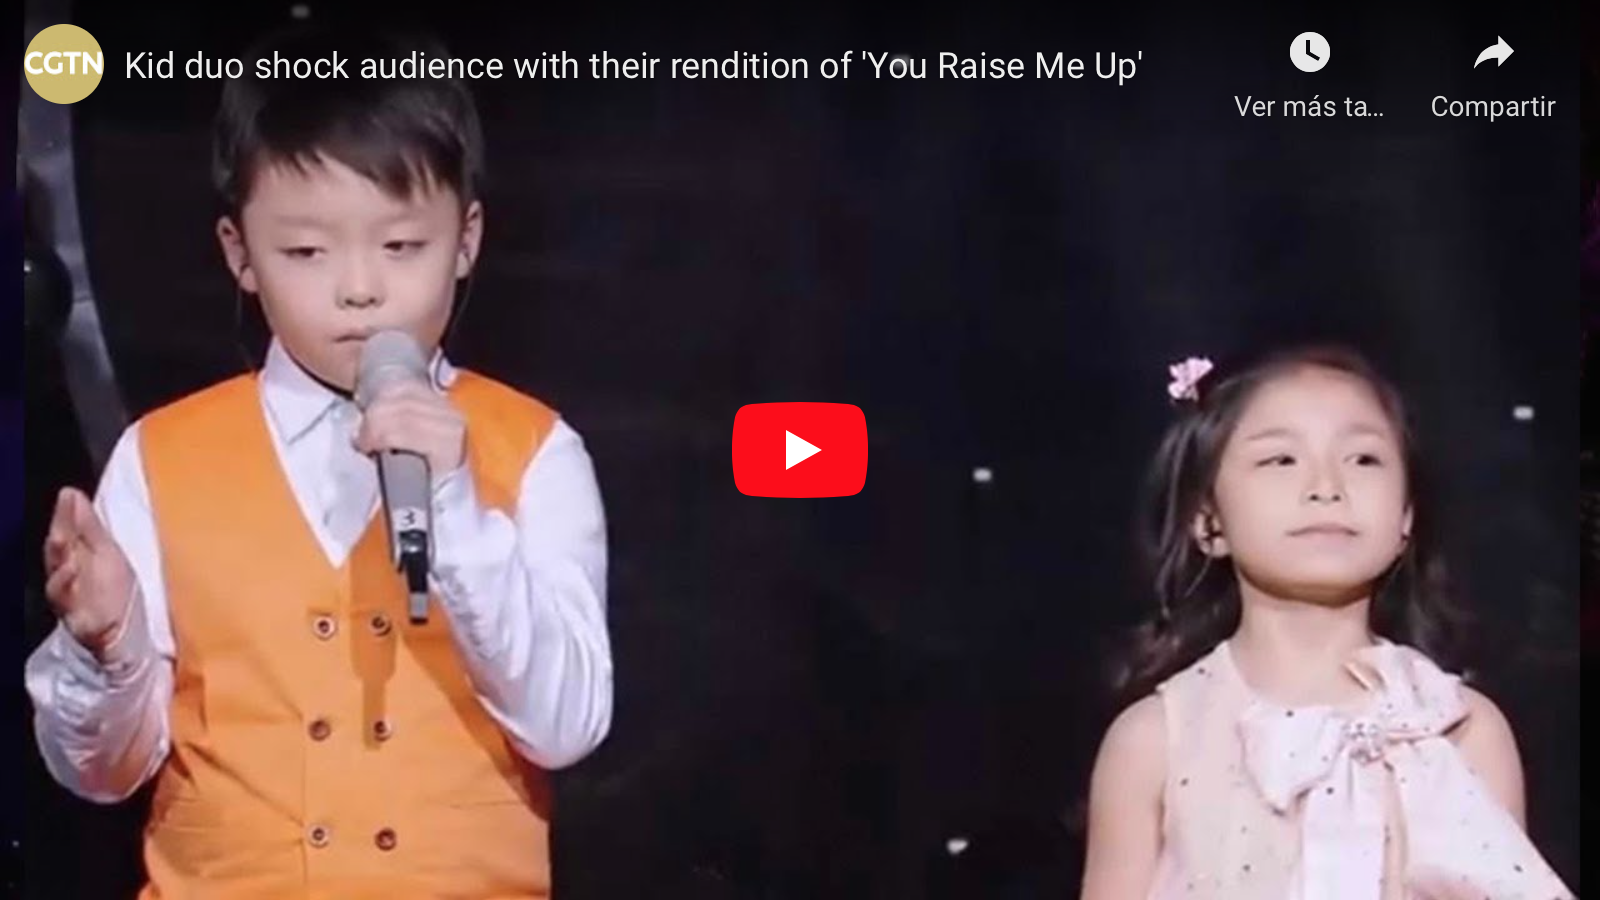 Dúo de niños conmueve audiencia en concurso de talentos Chino con la canción Tú me levantas